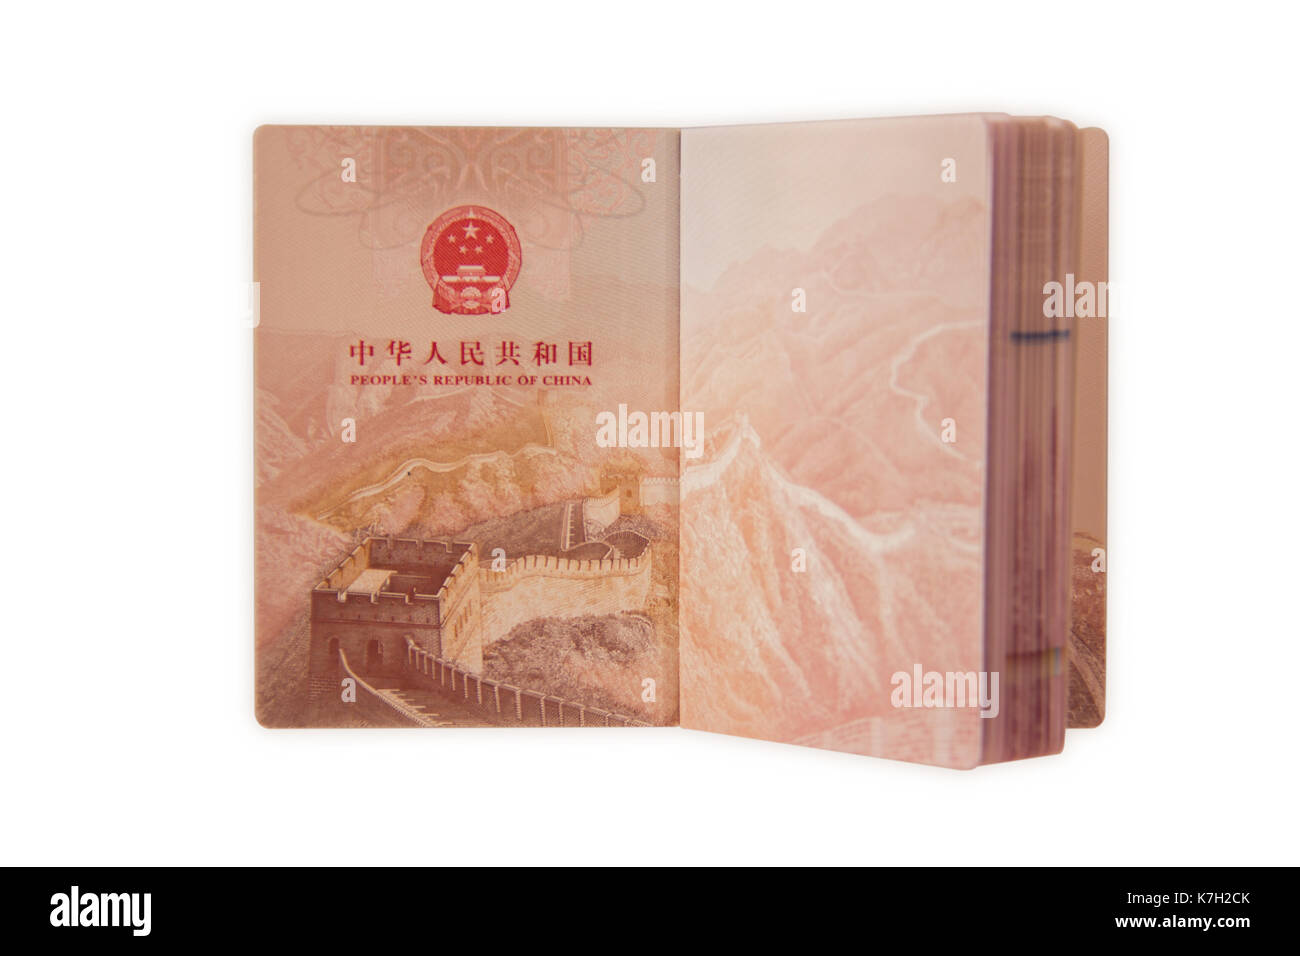 Un passaporto della Repubblica popolare cinese Foto Stock